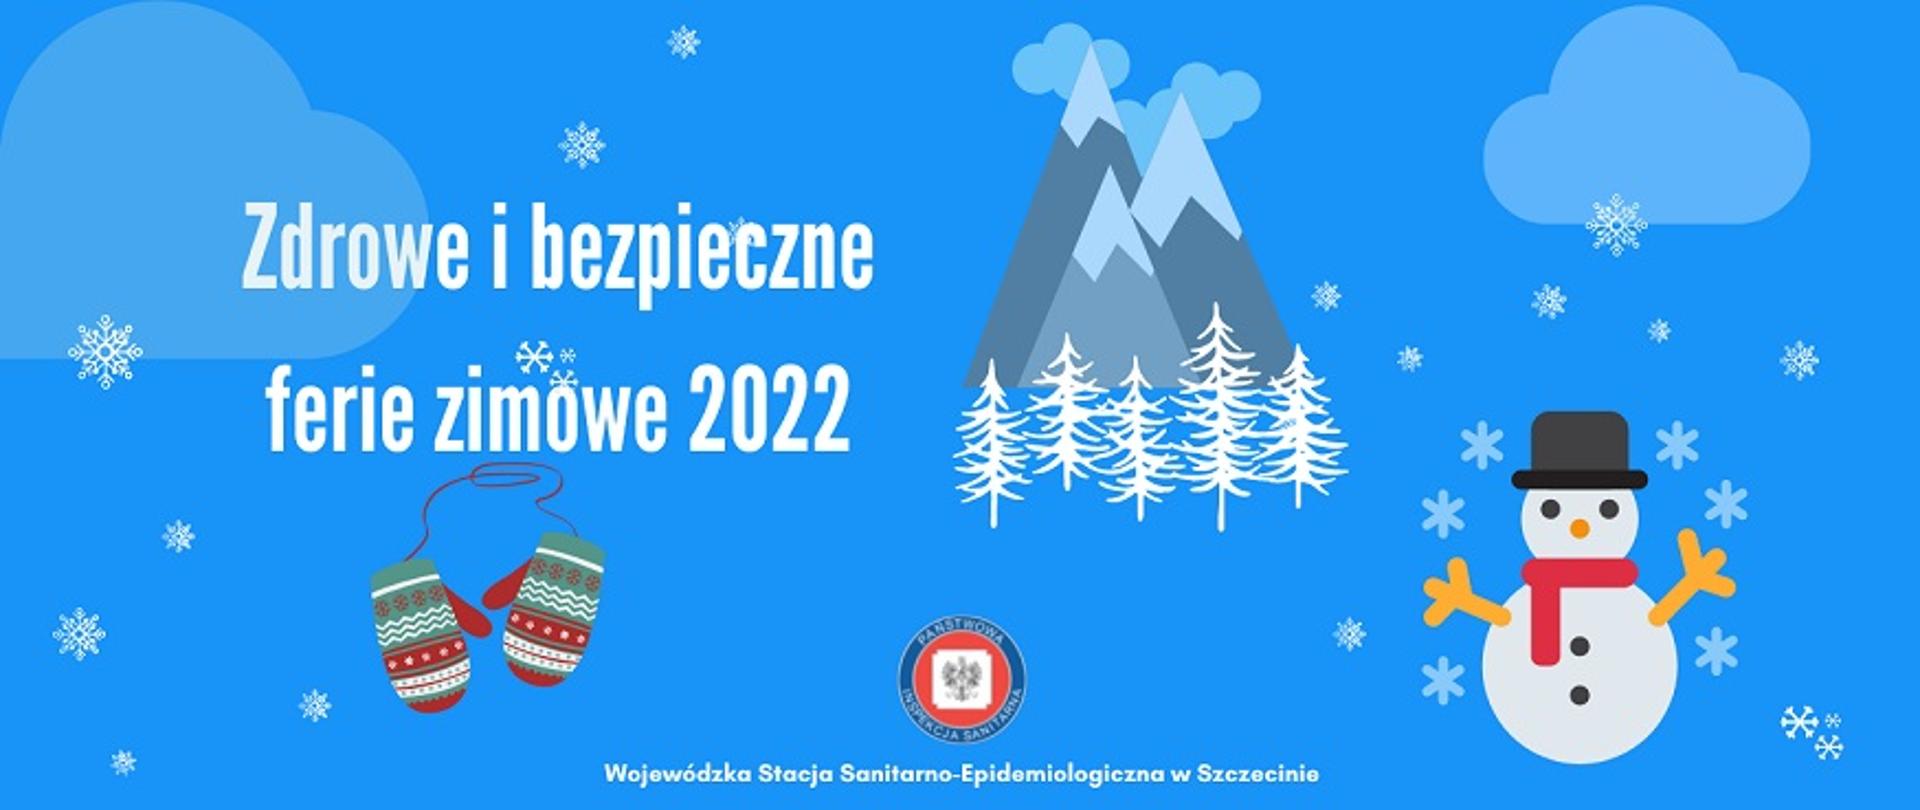 Grafika przedstawia góry, bałwanka i rękawiczki z napisem "Zdrowe i bezpieczne ferie zimowe 2022"